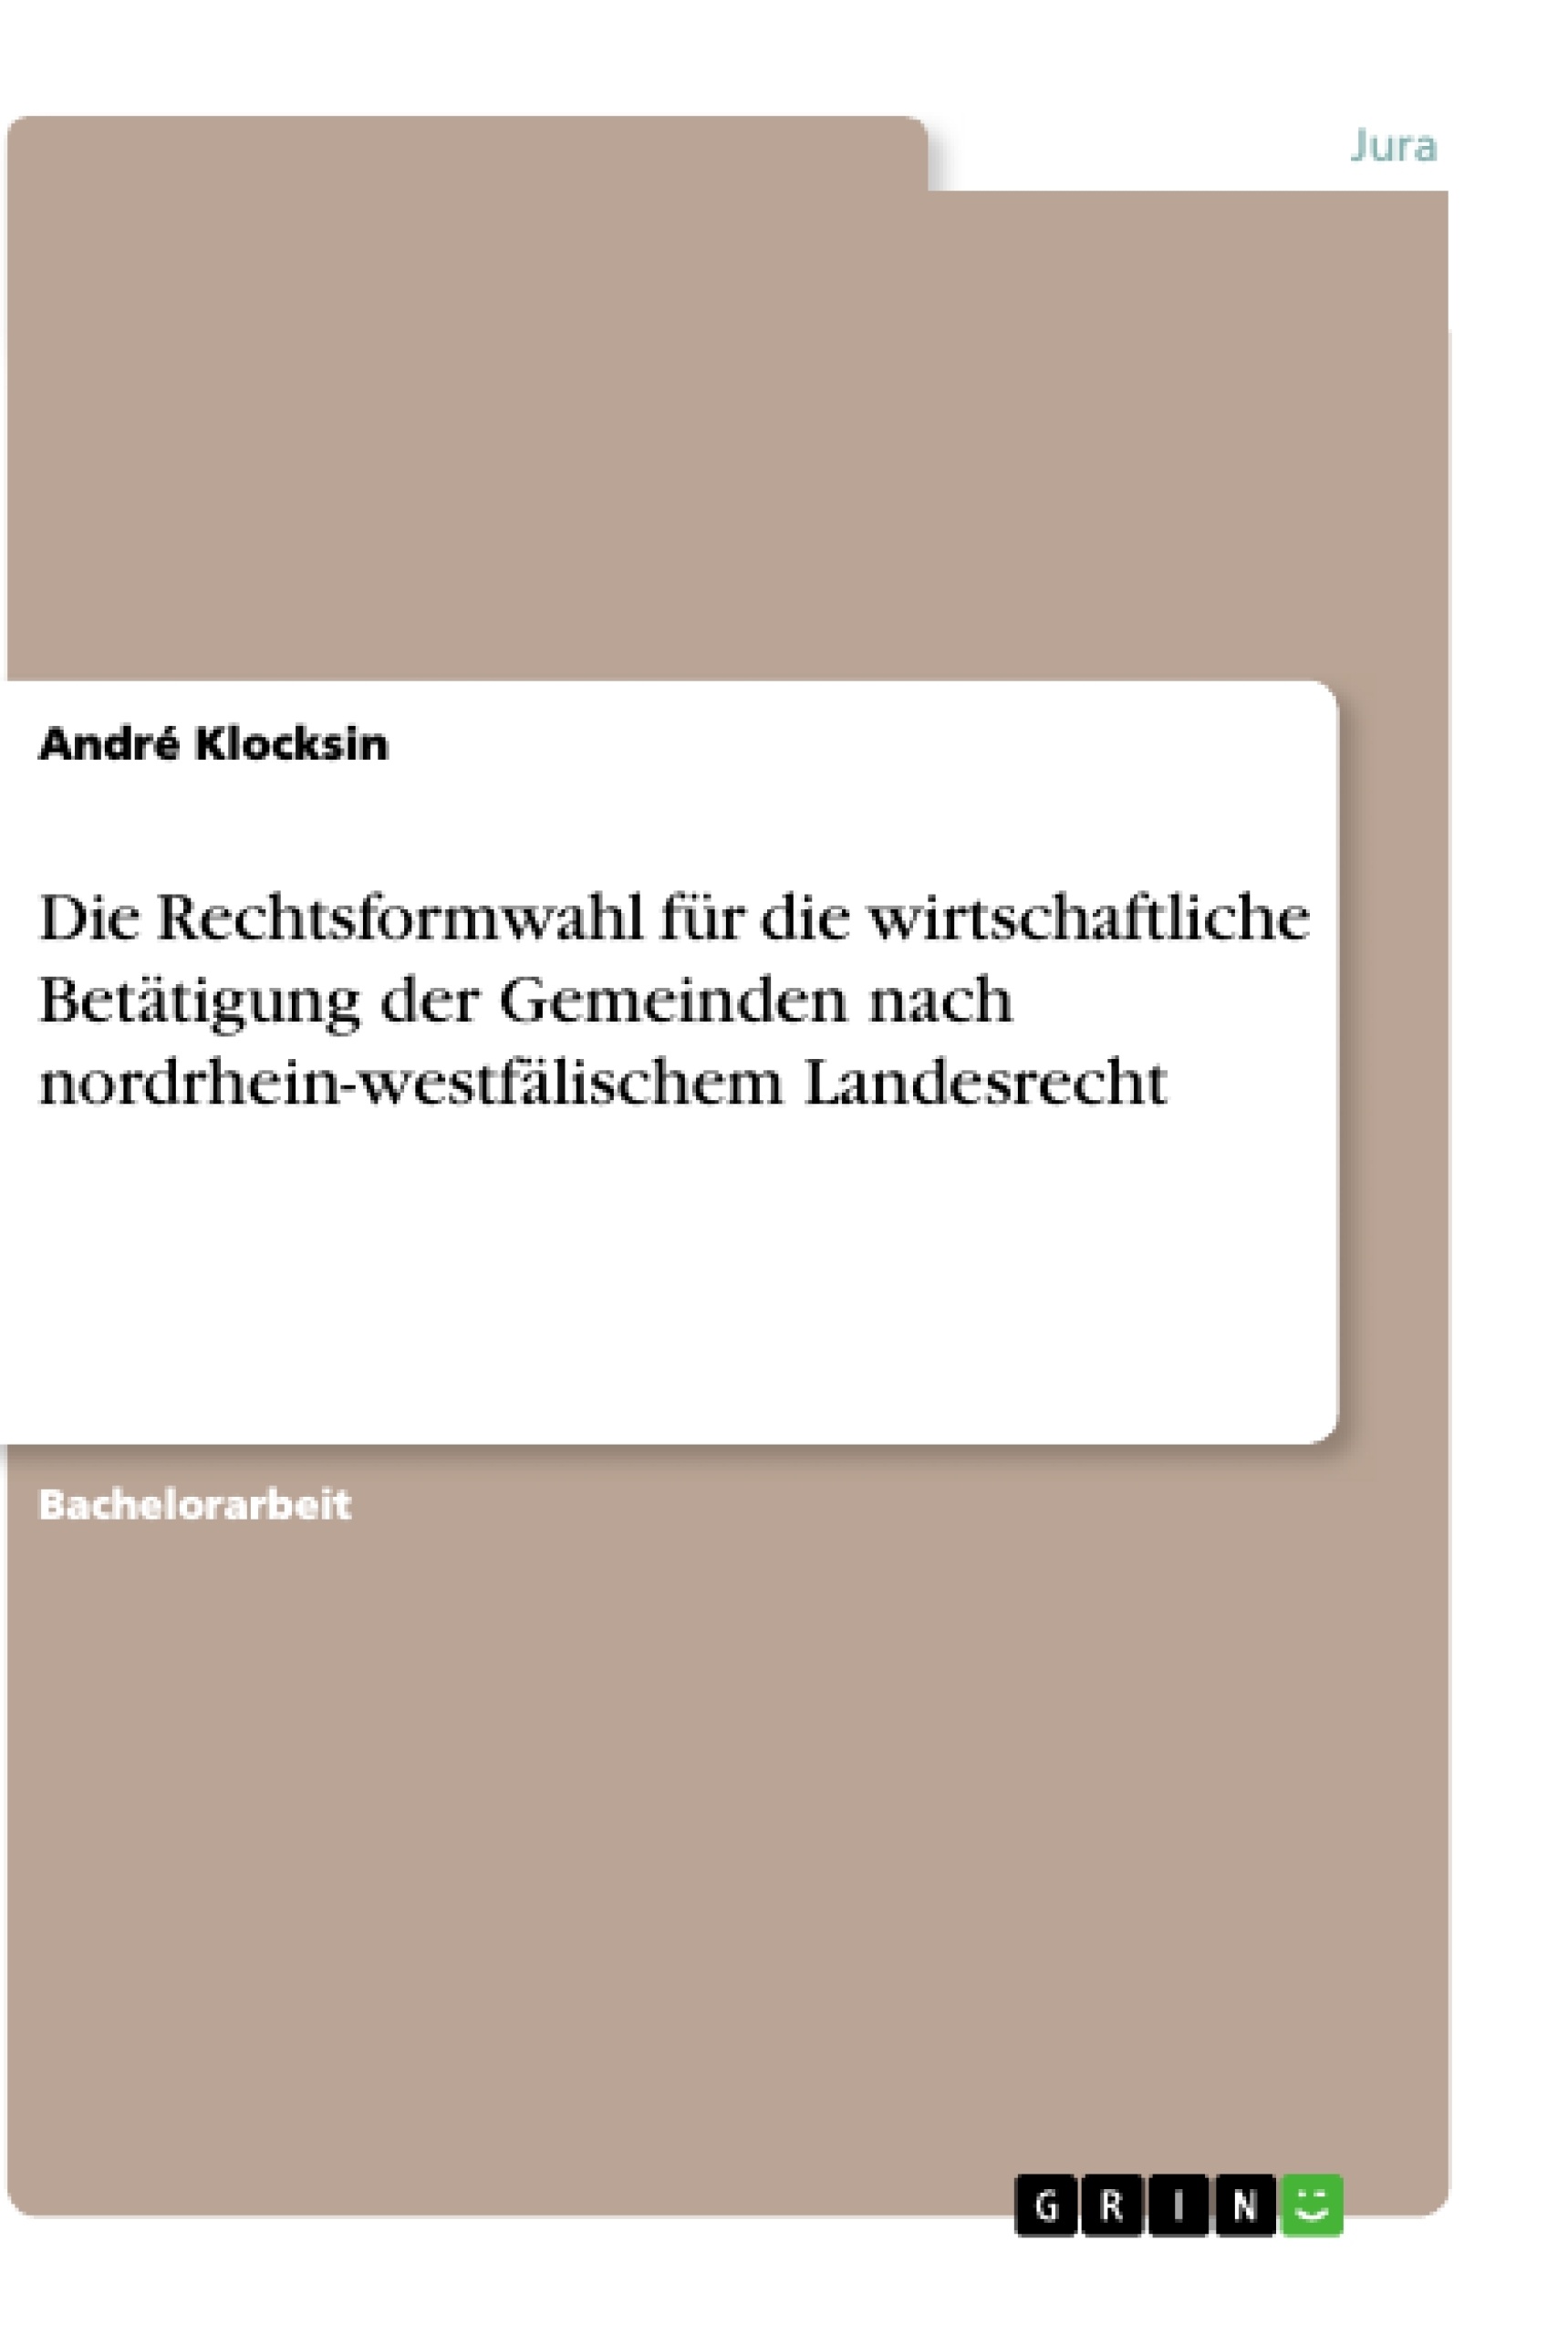 Title: Die Rechtsformwahl für die wirtschaftliche Betätigung der Gemeinden nach nordrhein-westfälischem Landesrecht